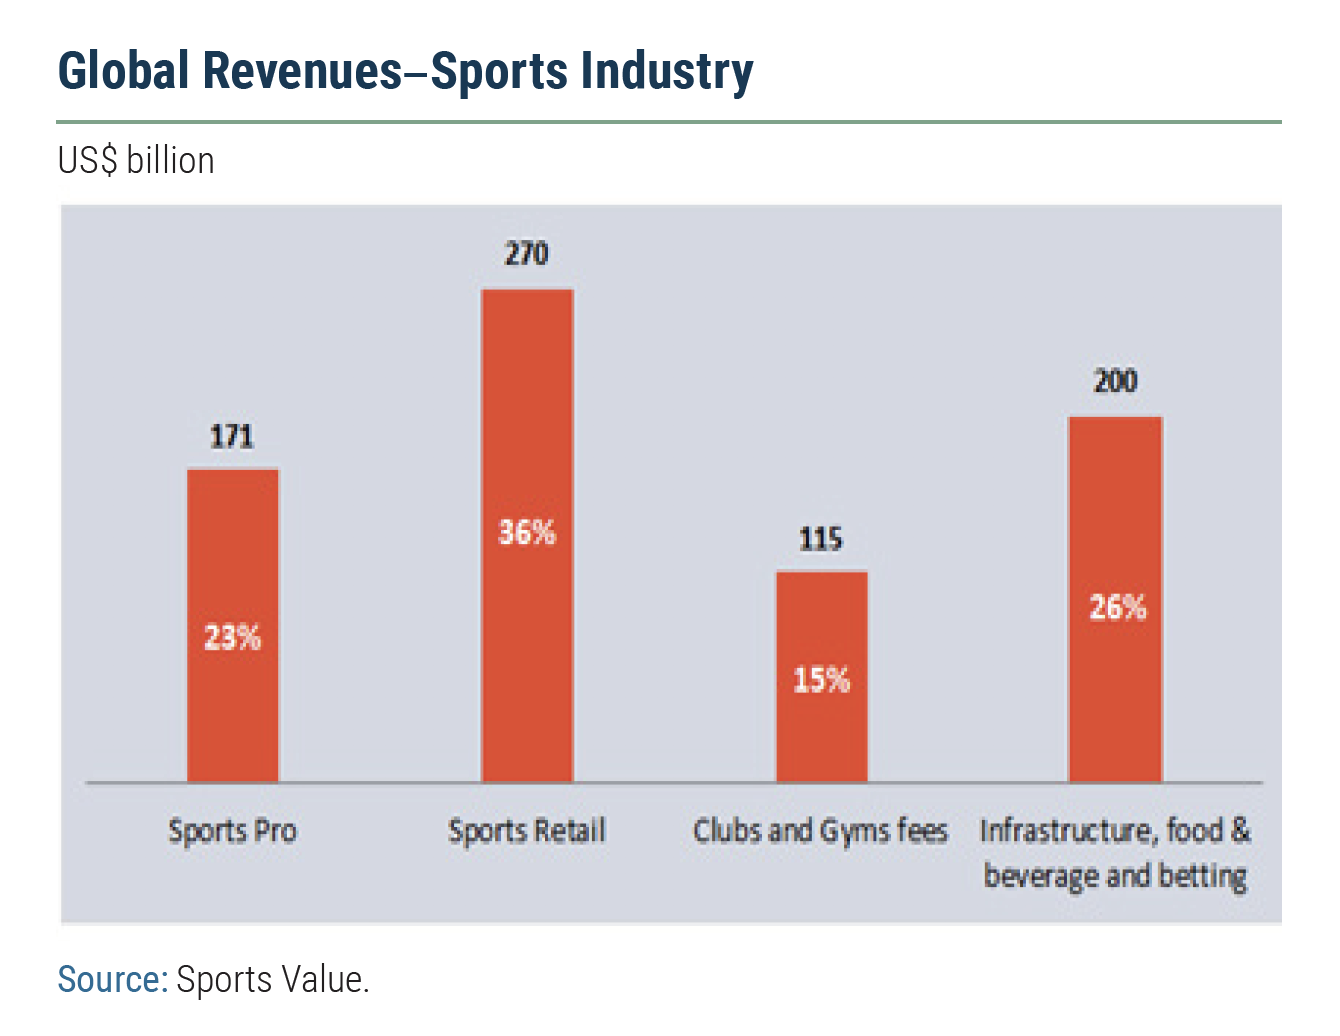 COVID's Impact & Future of Sports Revenue